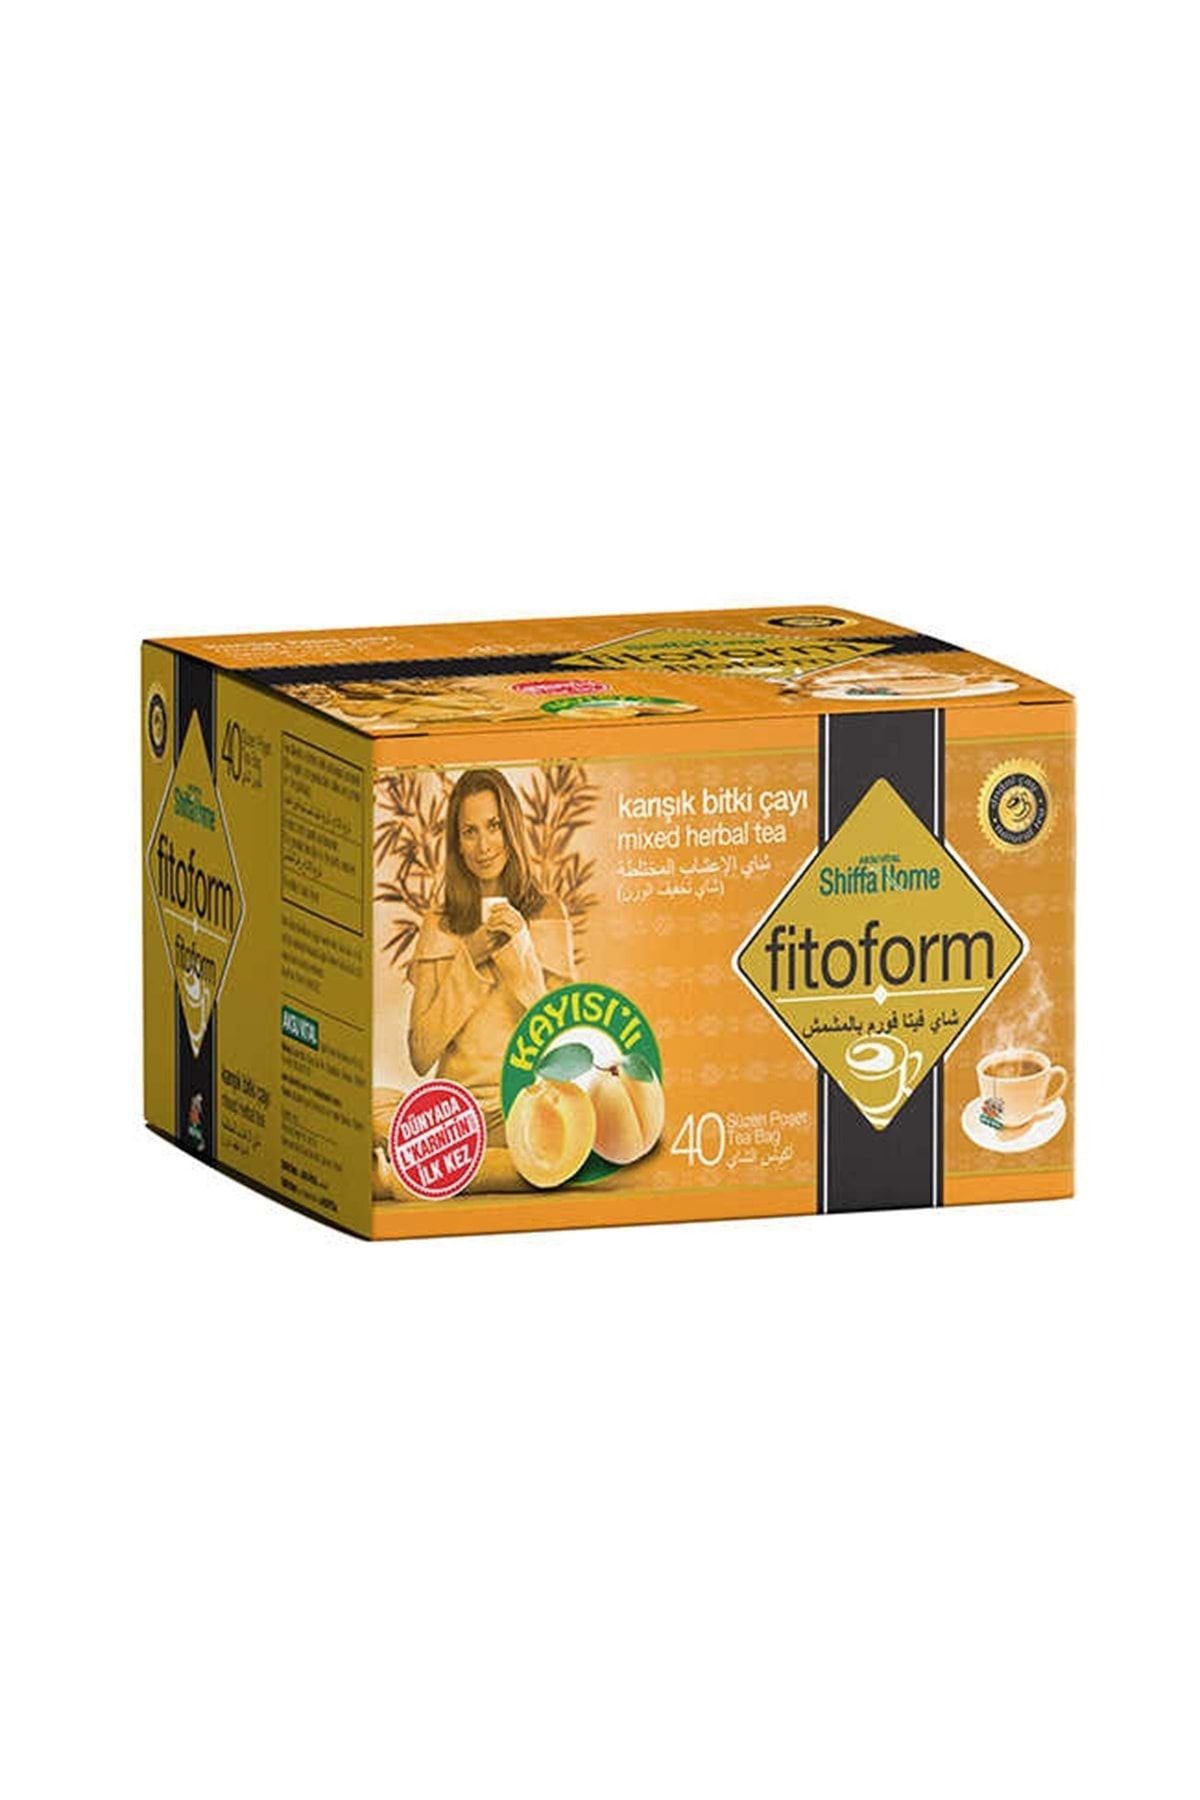 Shiffa Home Fitoform Kayısılı Turuncu Karışık Bitki Çayı 40 Adet